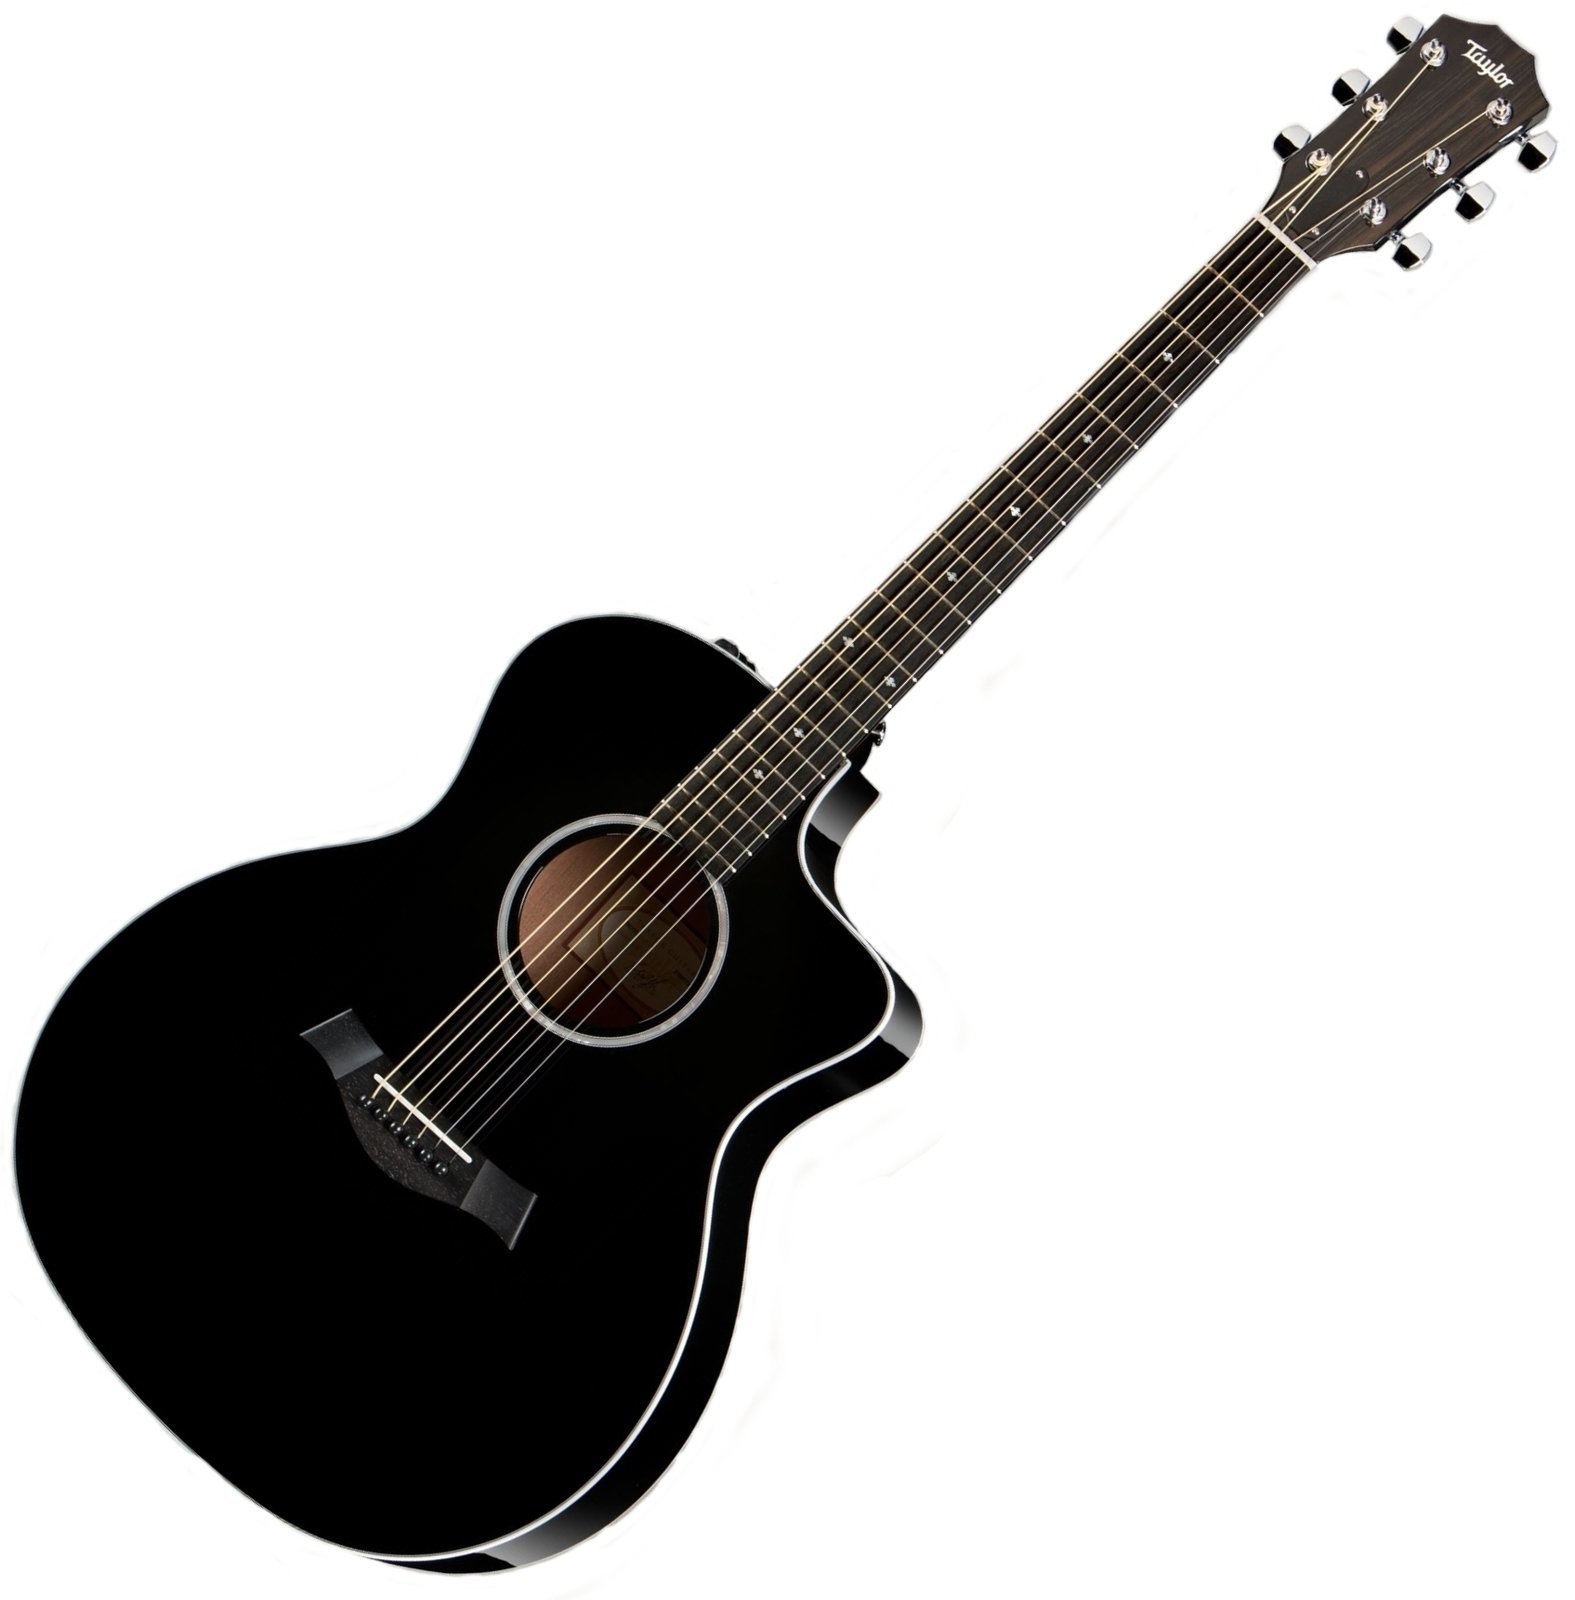 Jumbo elektro-akoestische gitaar Taylor Guitars 214ce Deluxe Grand Auditorium Black